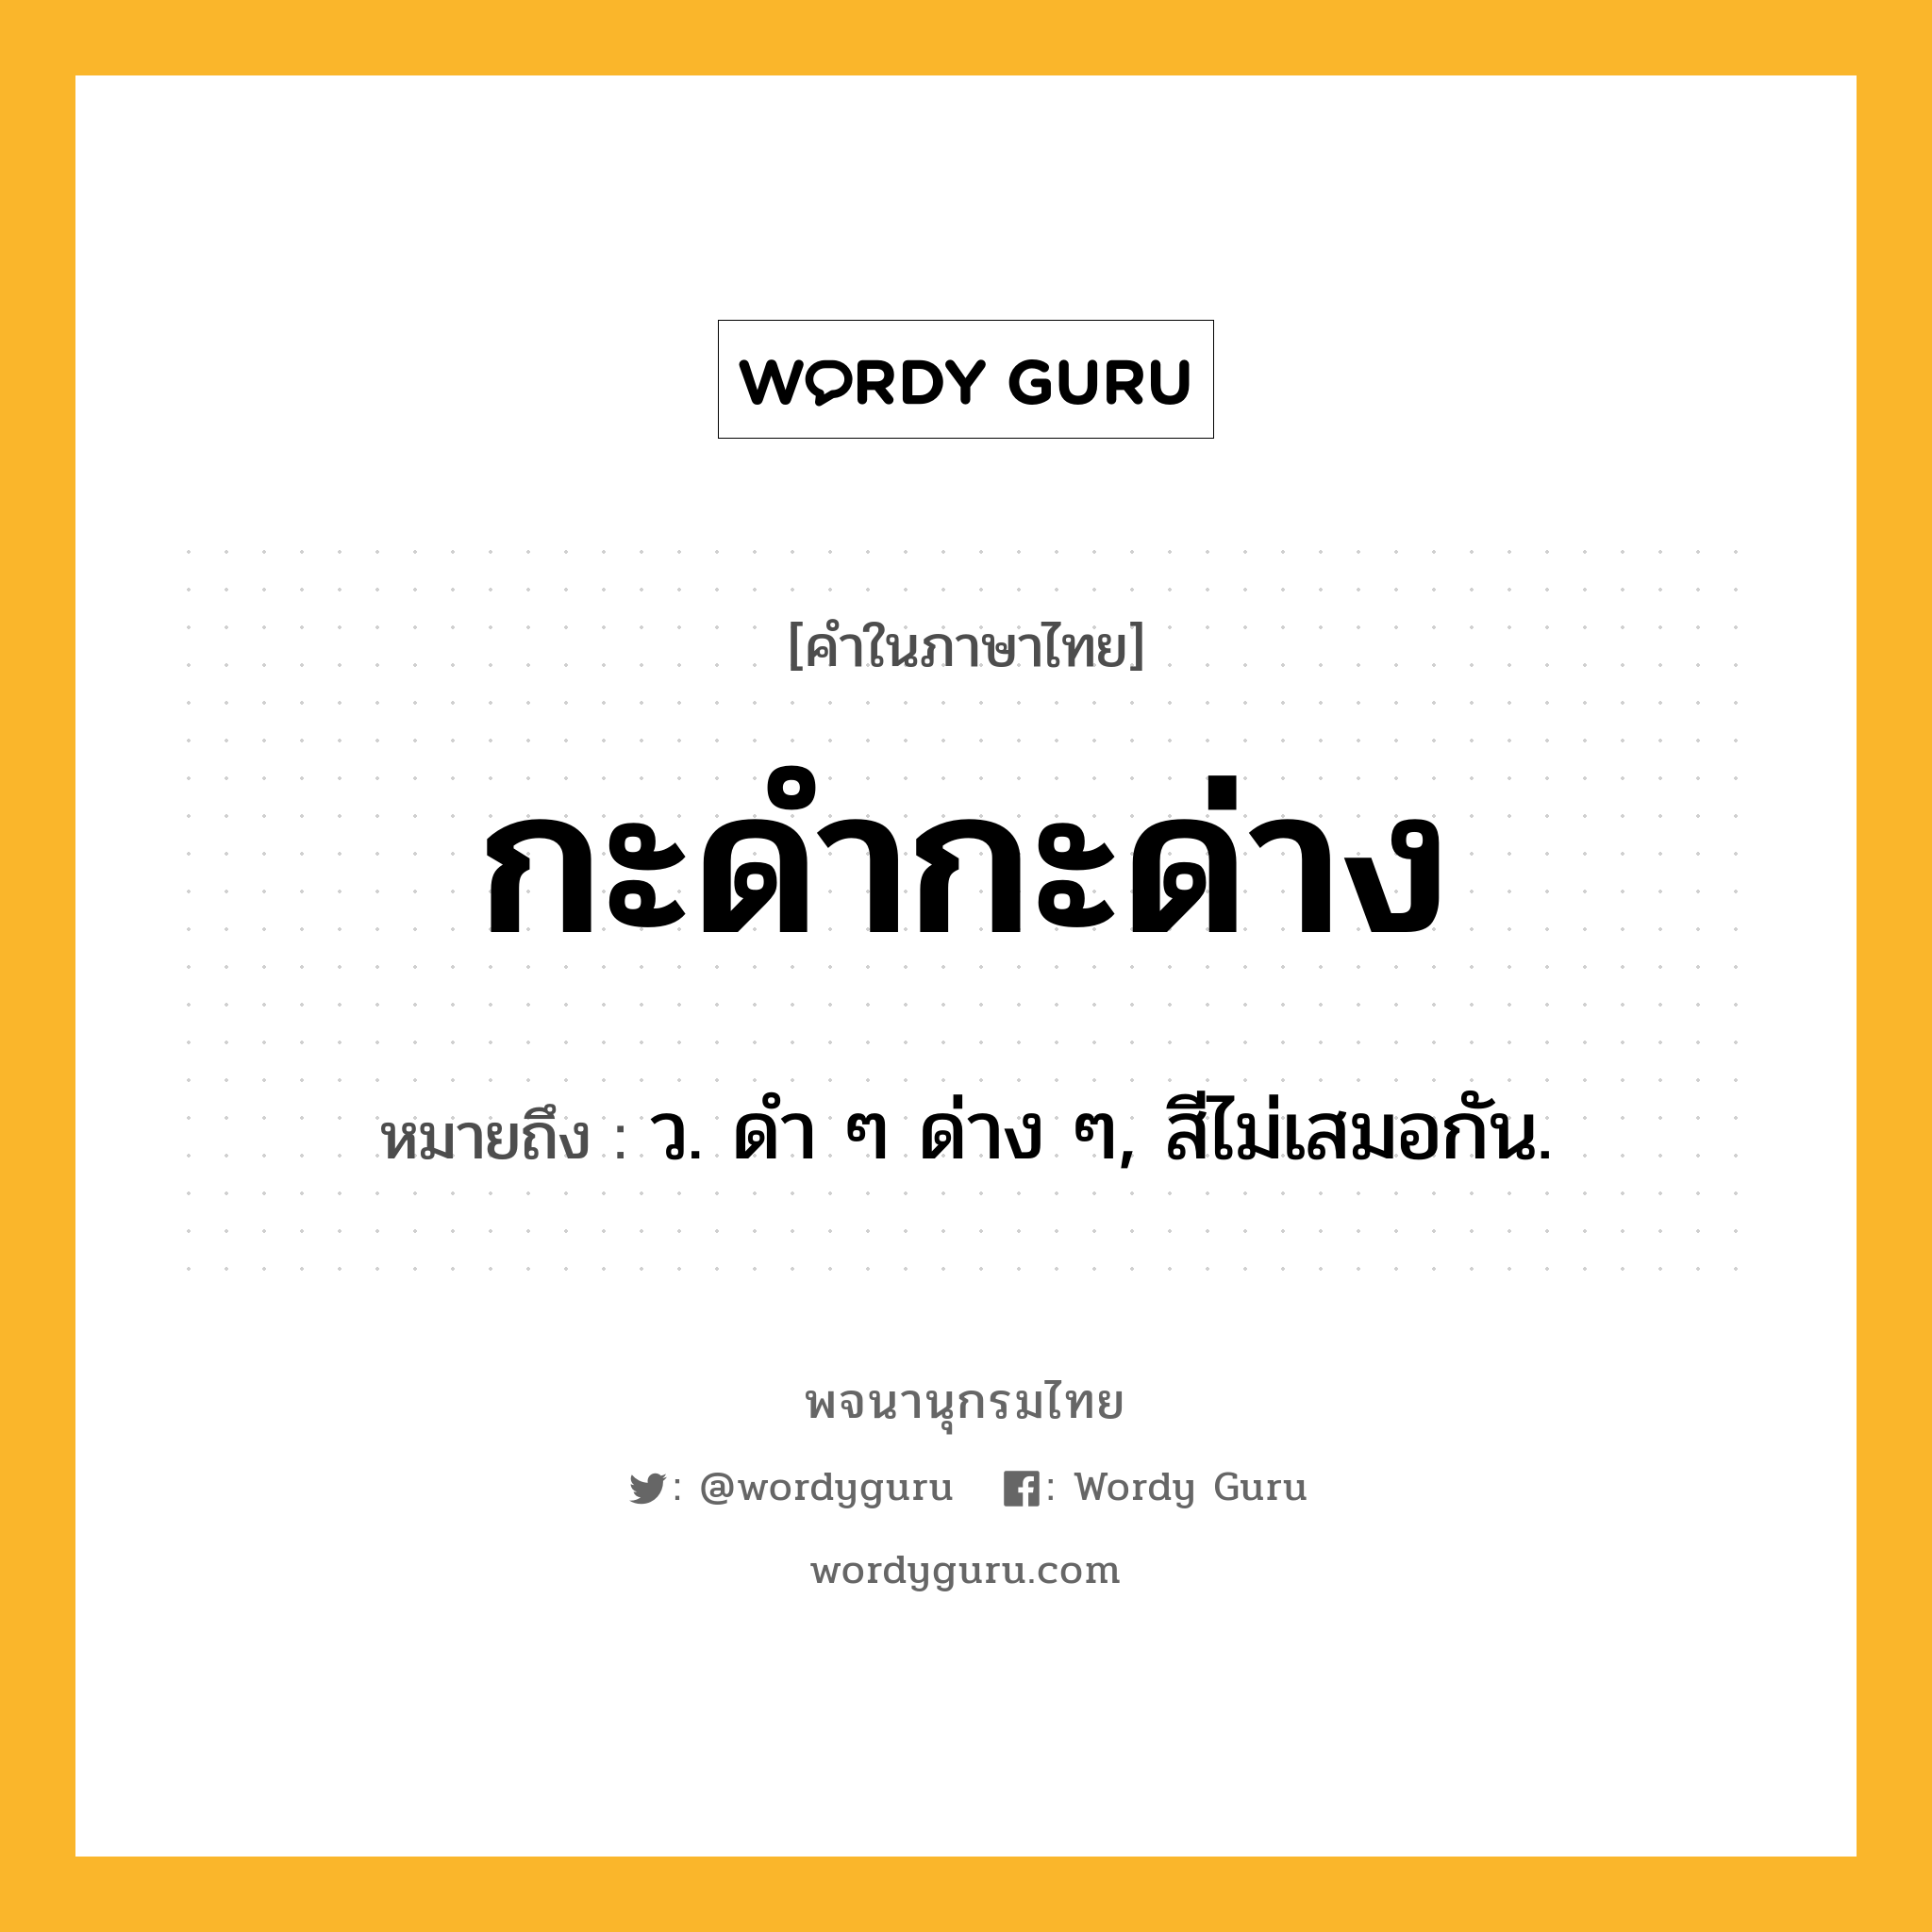 กะดำกะด่าง ความหมาย หมายถึงอะไร?, คำในภาษาไทย กะดำกะด่าง หมายถึง ว. ดํา ๆ ด่าง ๆ, สีไม่เสมอกัน.